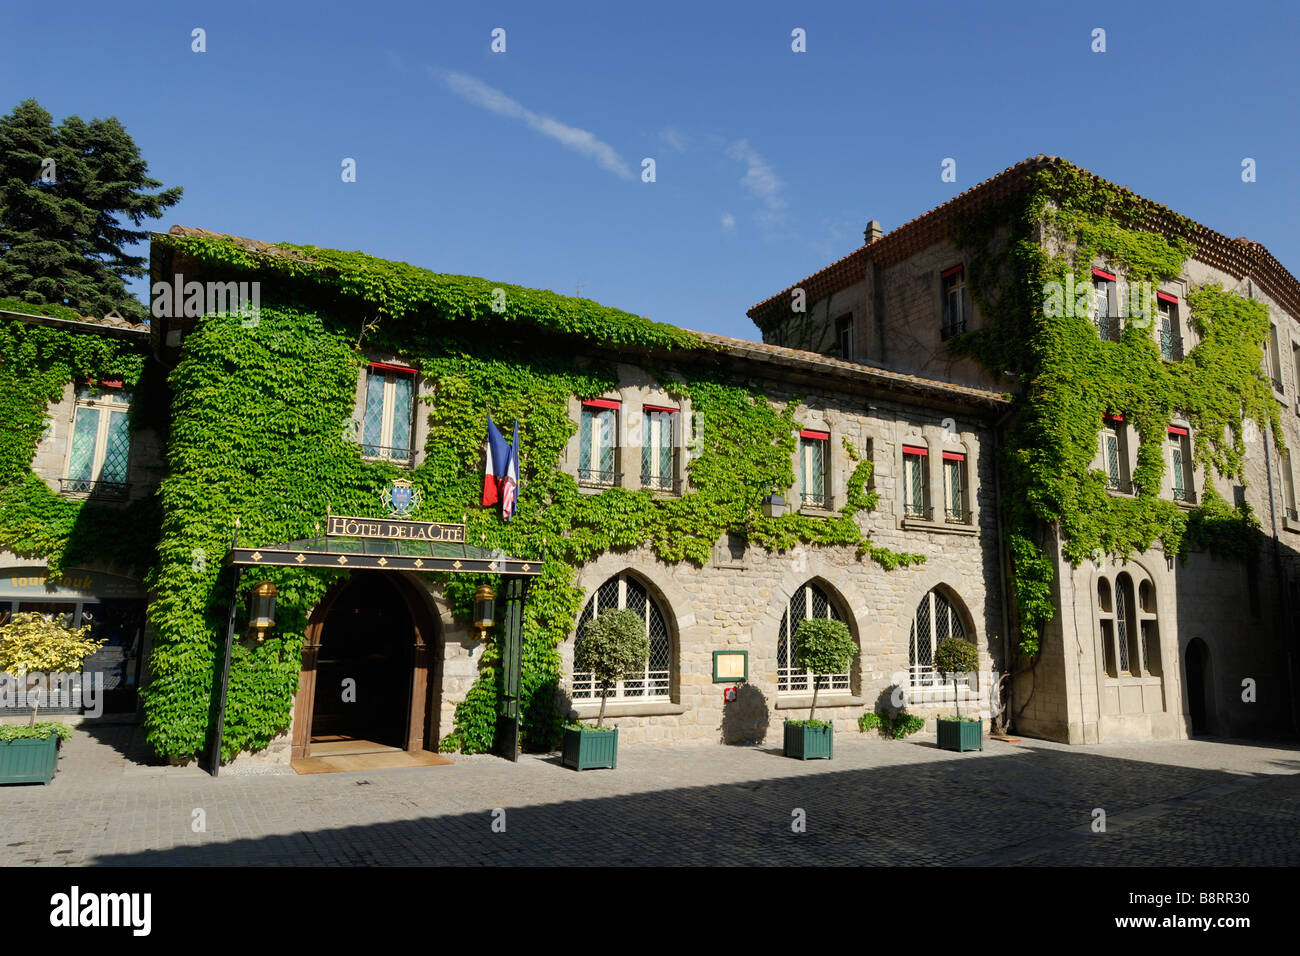 Carcassonne Francia Hotel de la Cité, all'interno della vecchia città medievale Foto Stock